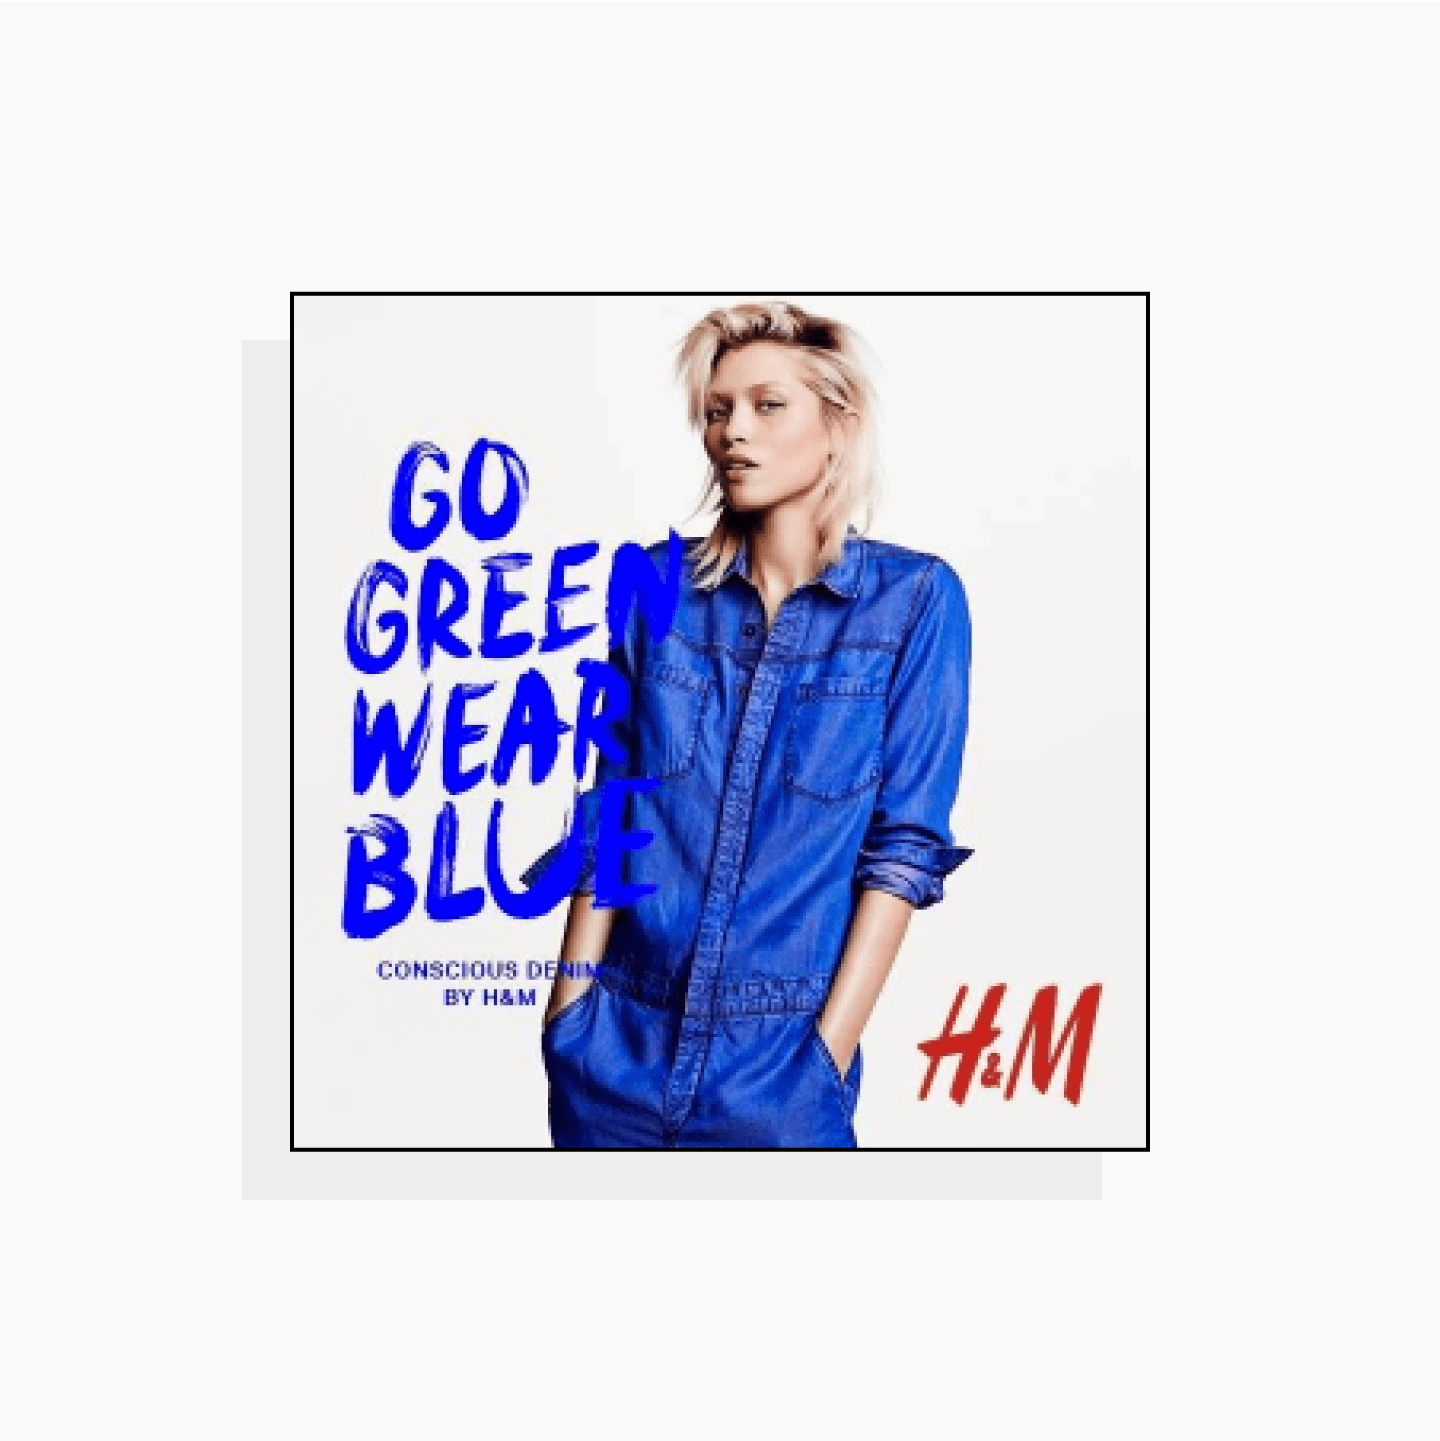 Go green, wear blue – H&M Concious advert